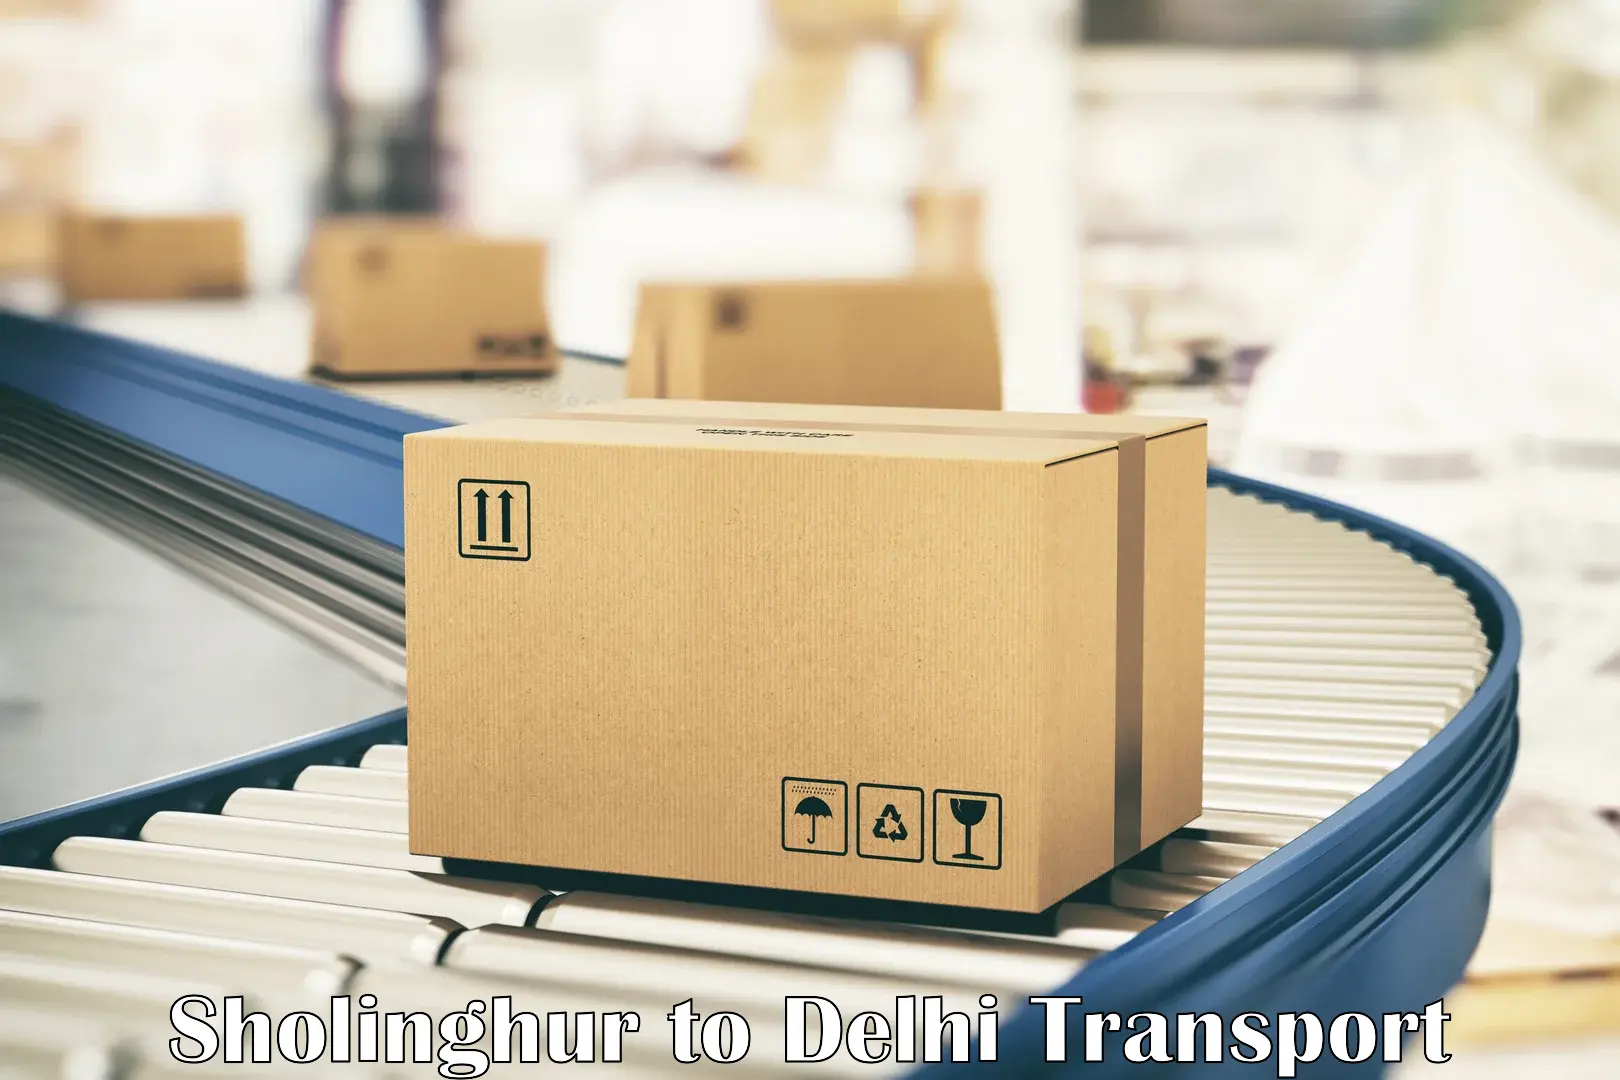 Vehicle parcel service Sholinghur to Delhi